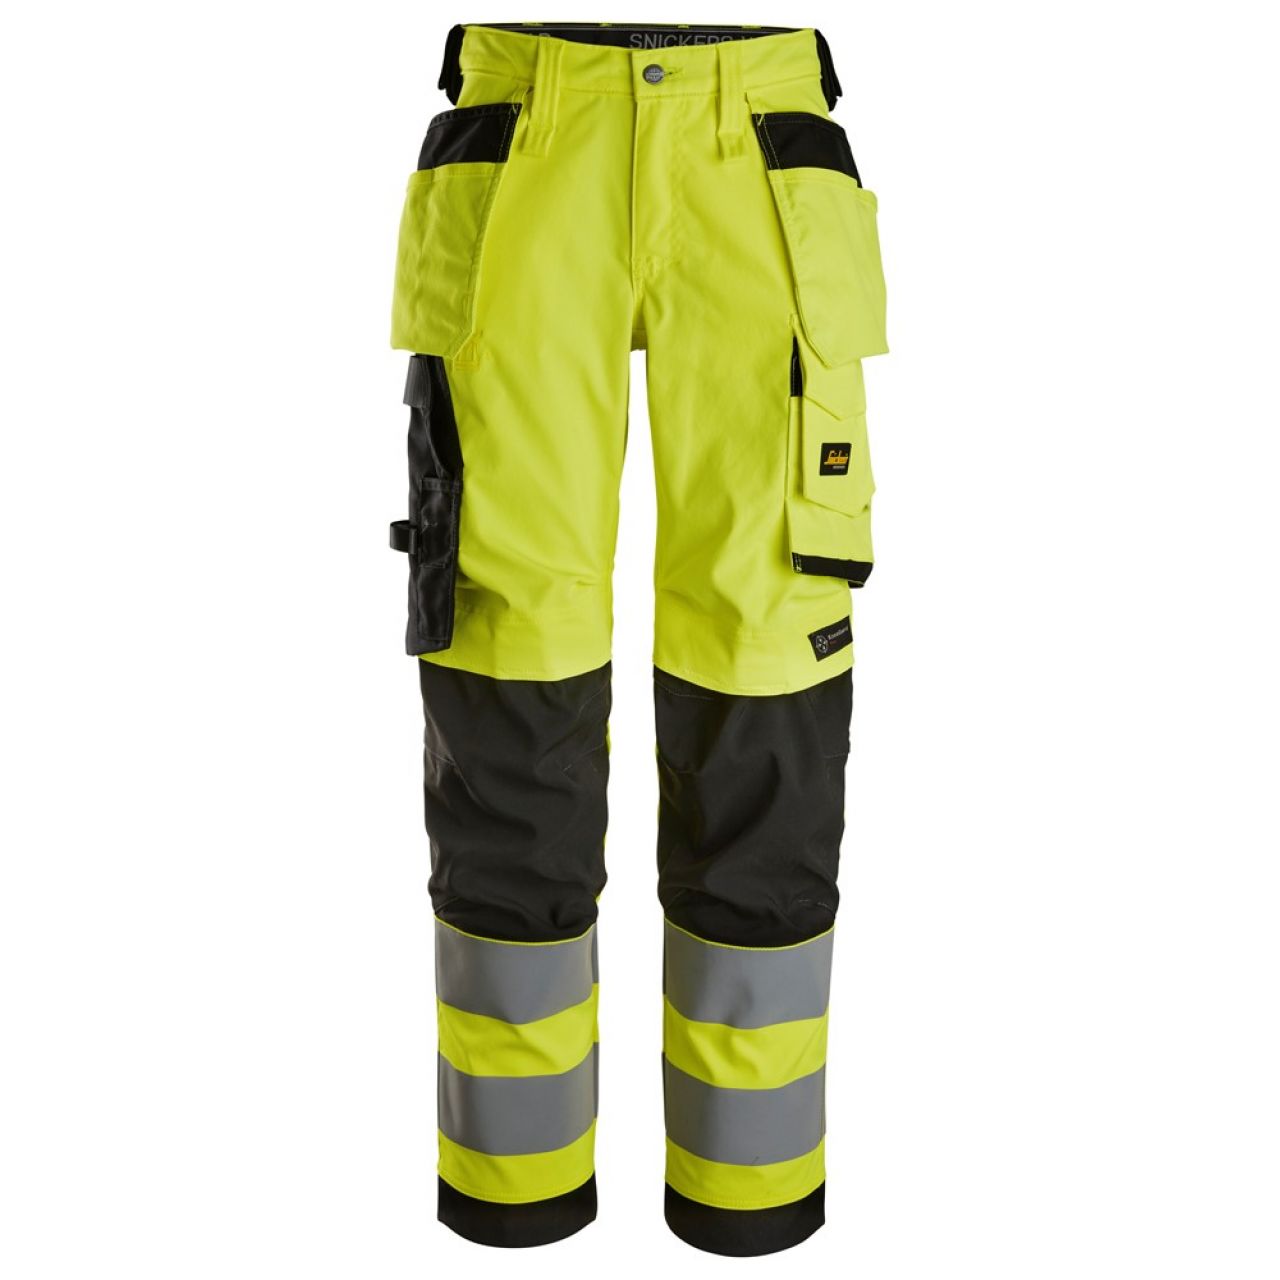 6743 Pantalones largos de trabajo elásticos de alta visibilidad clase 2 para mujer con bolsillos flotantes amarillo-negro talla 88